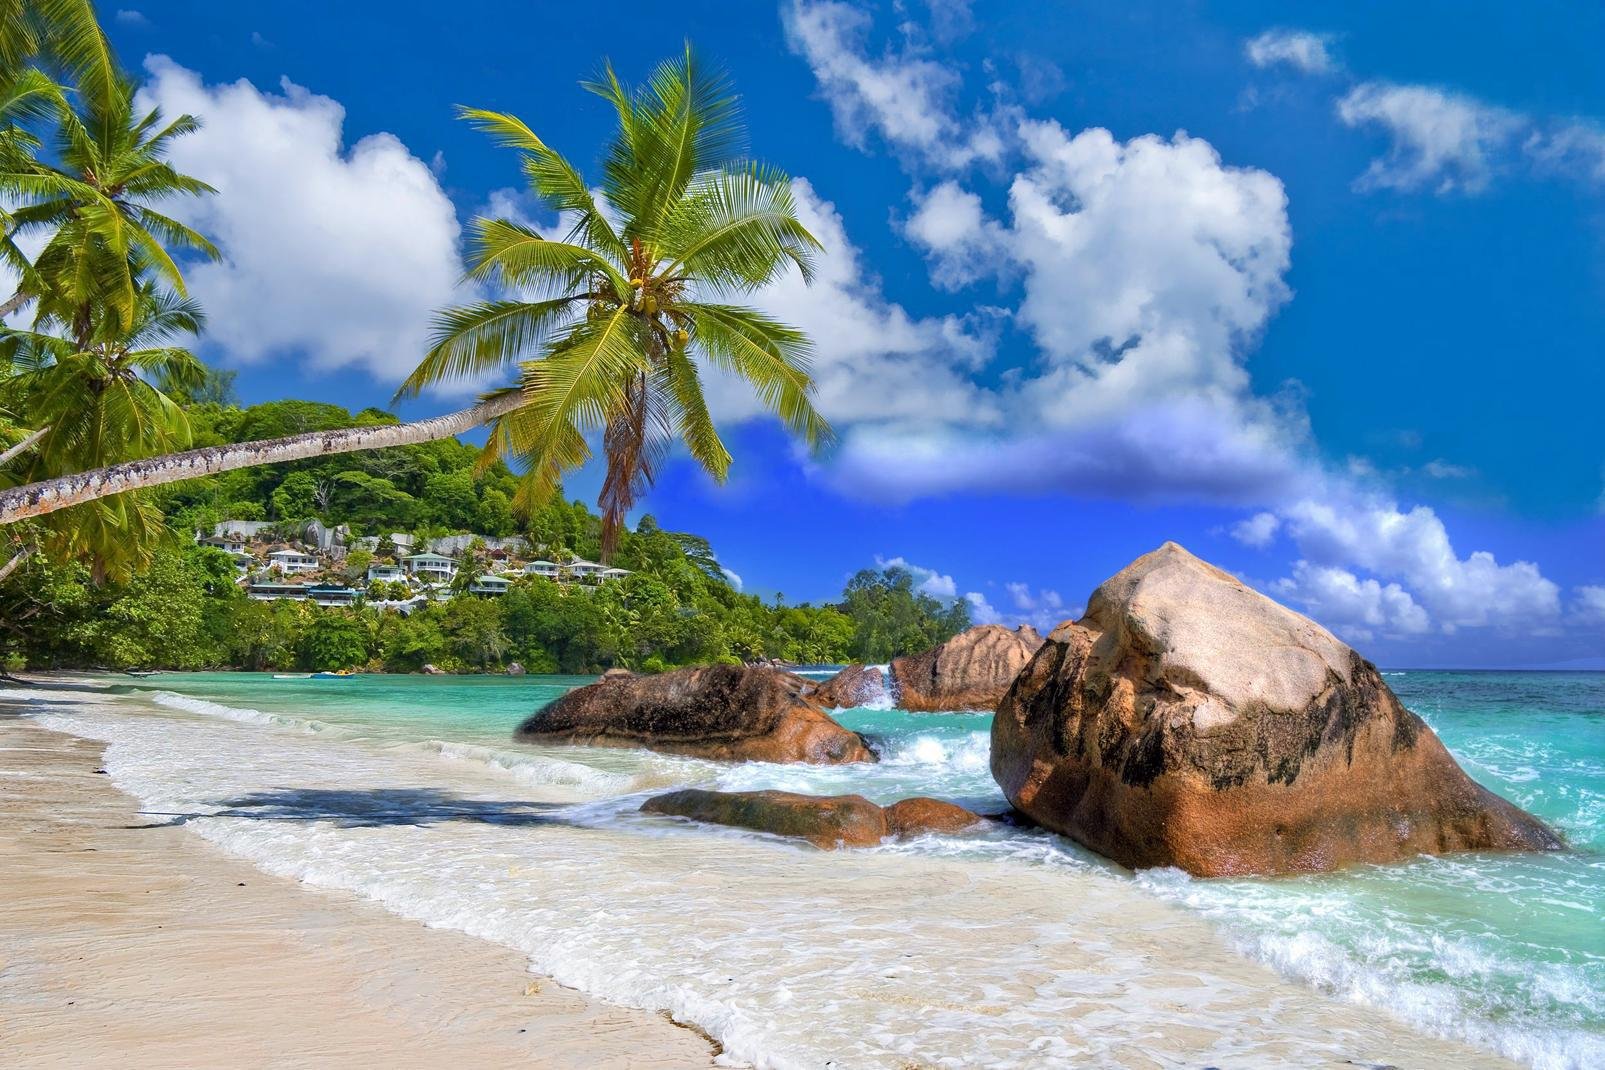 Con su aeropuerto internacional, Mahé constituye un punto de paso obligado para los viajeros que van a las Seychelles. Esta isla montañosa de 27 km de largo por 8 de ancho es la más grande del archipiélago. También es la más poblada, tiene 60.000 habitantes, lo que equivale a 9 de cada 10 seychellenses. Pero aunque Mahé sea la isla más urbanizada de todas, eso no quiere decir que ...